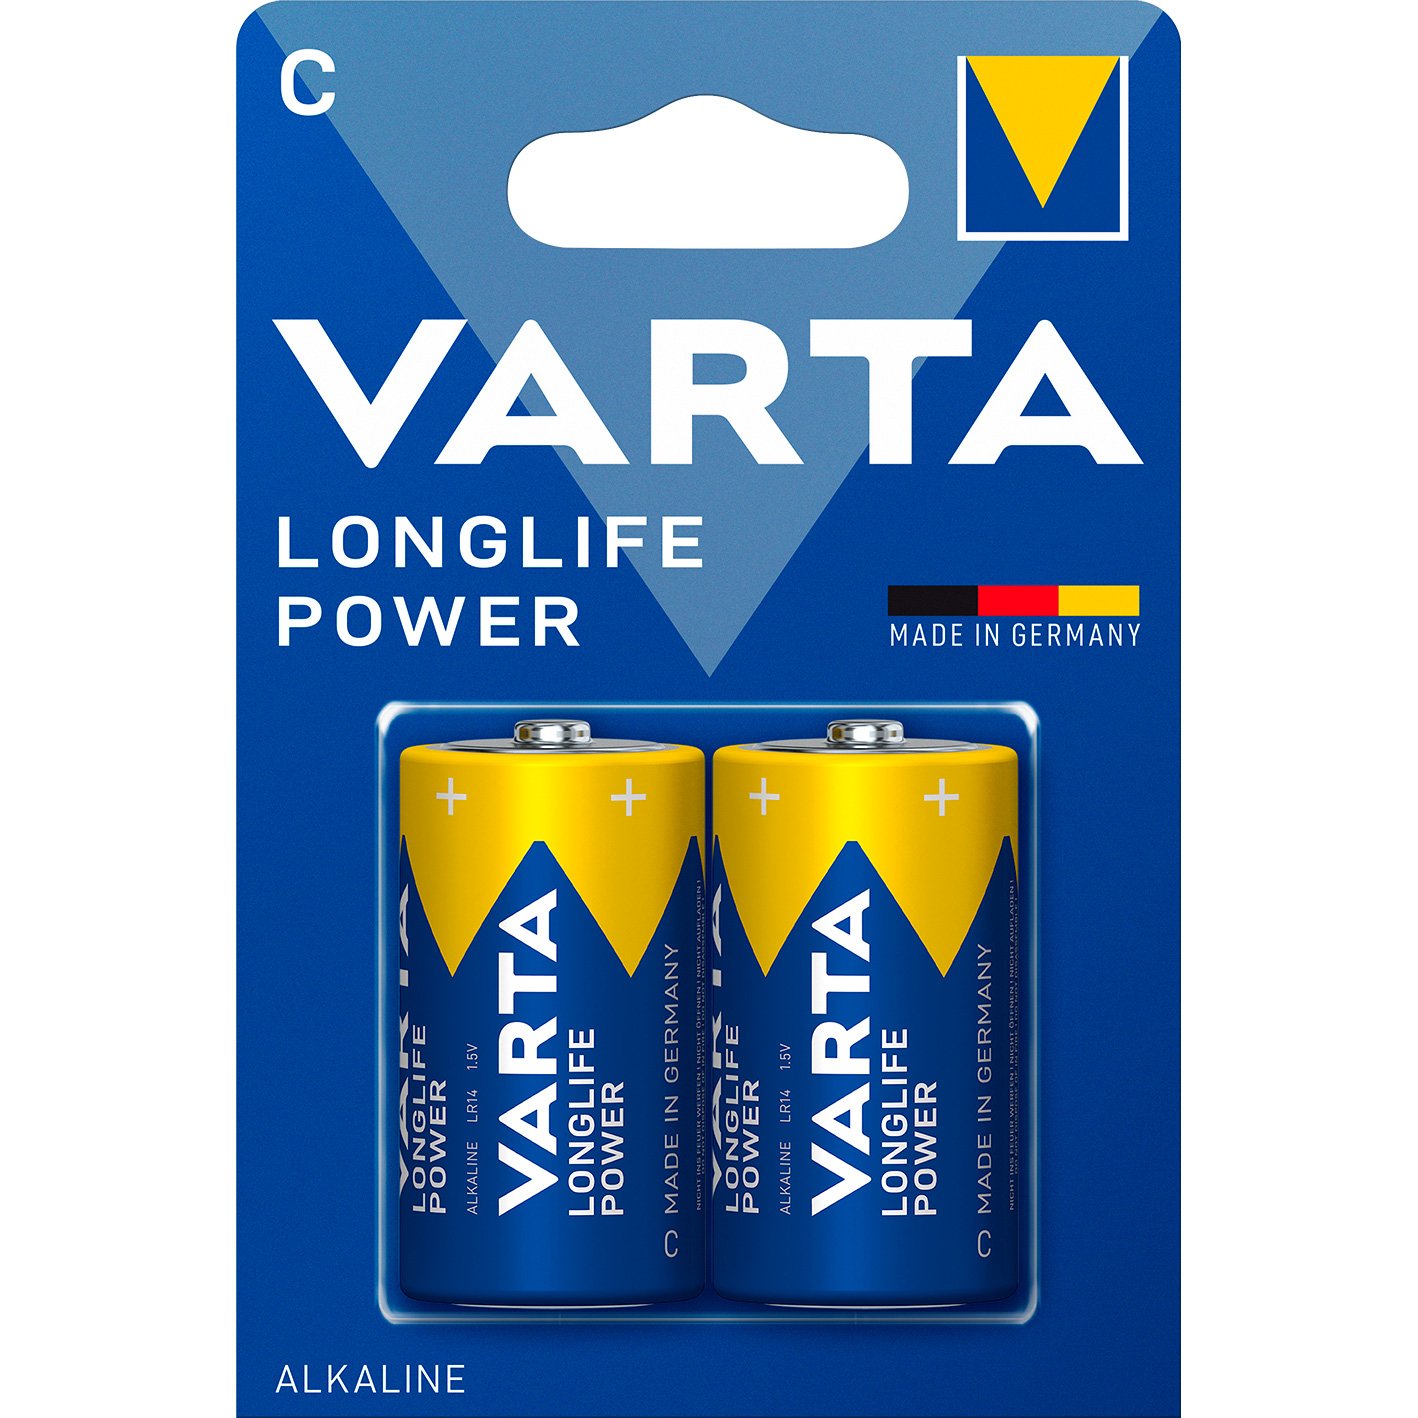 VARTA LongLife Power batteri C/LR14 1.5 v 2 stk